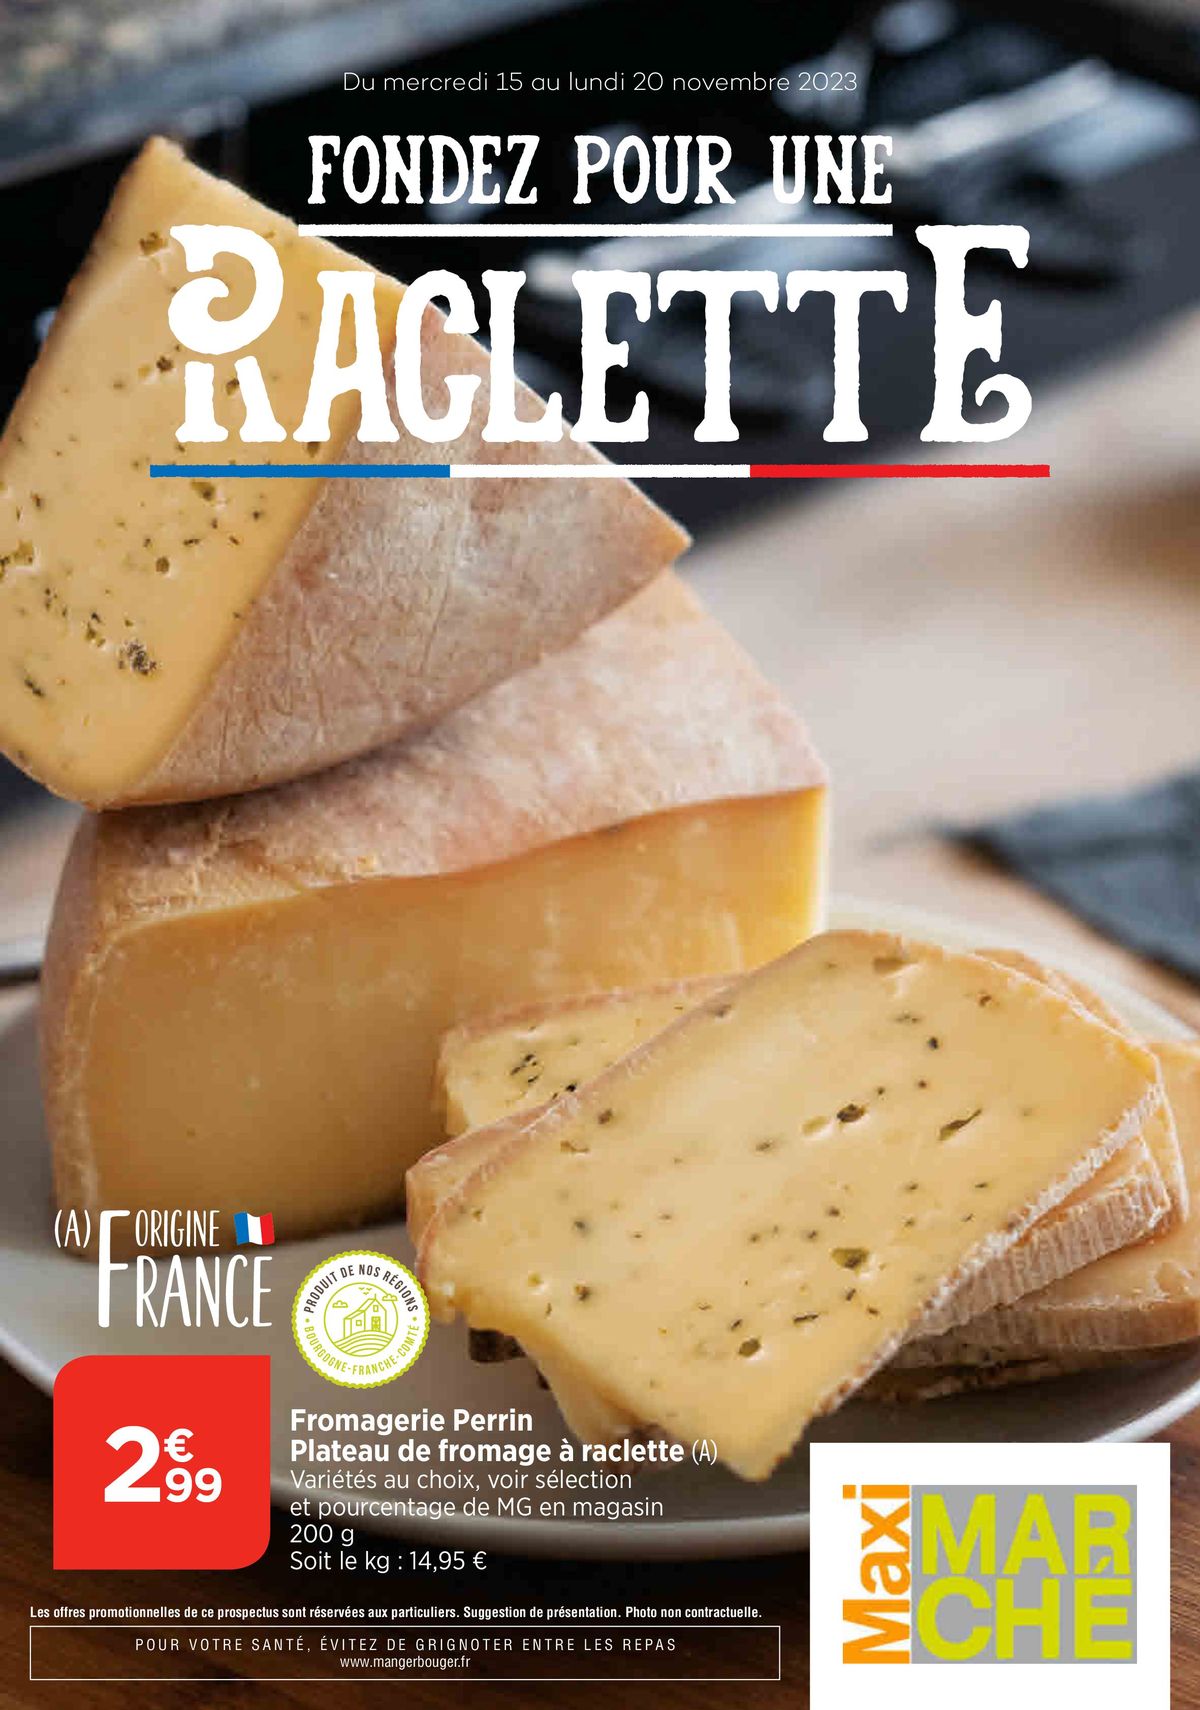 Catalogue Fondez poour une raclette, page 00001